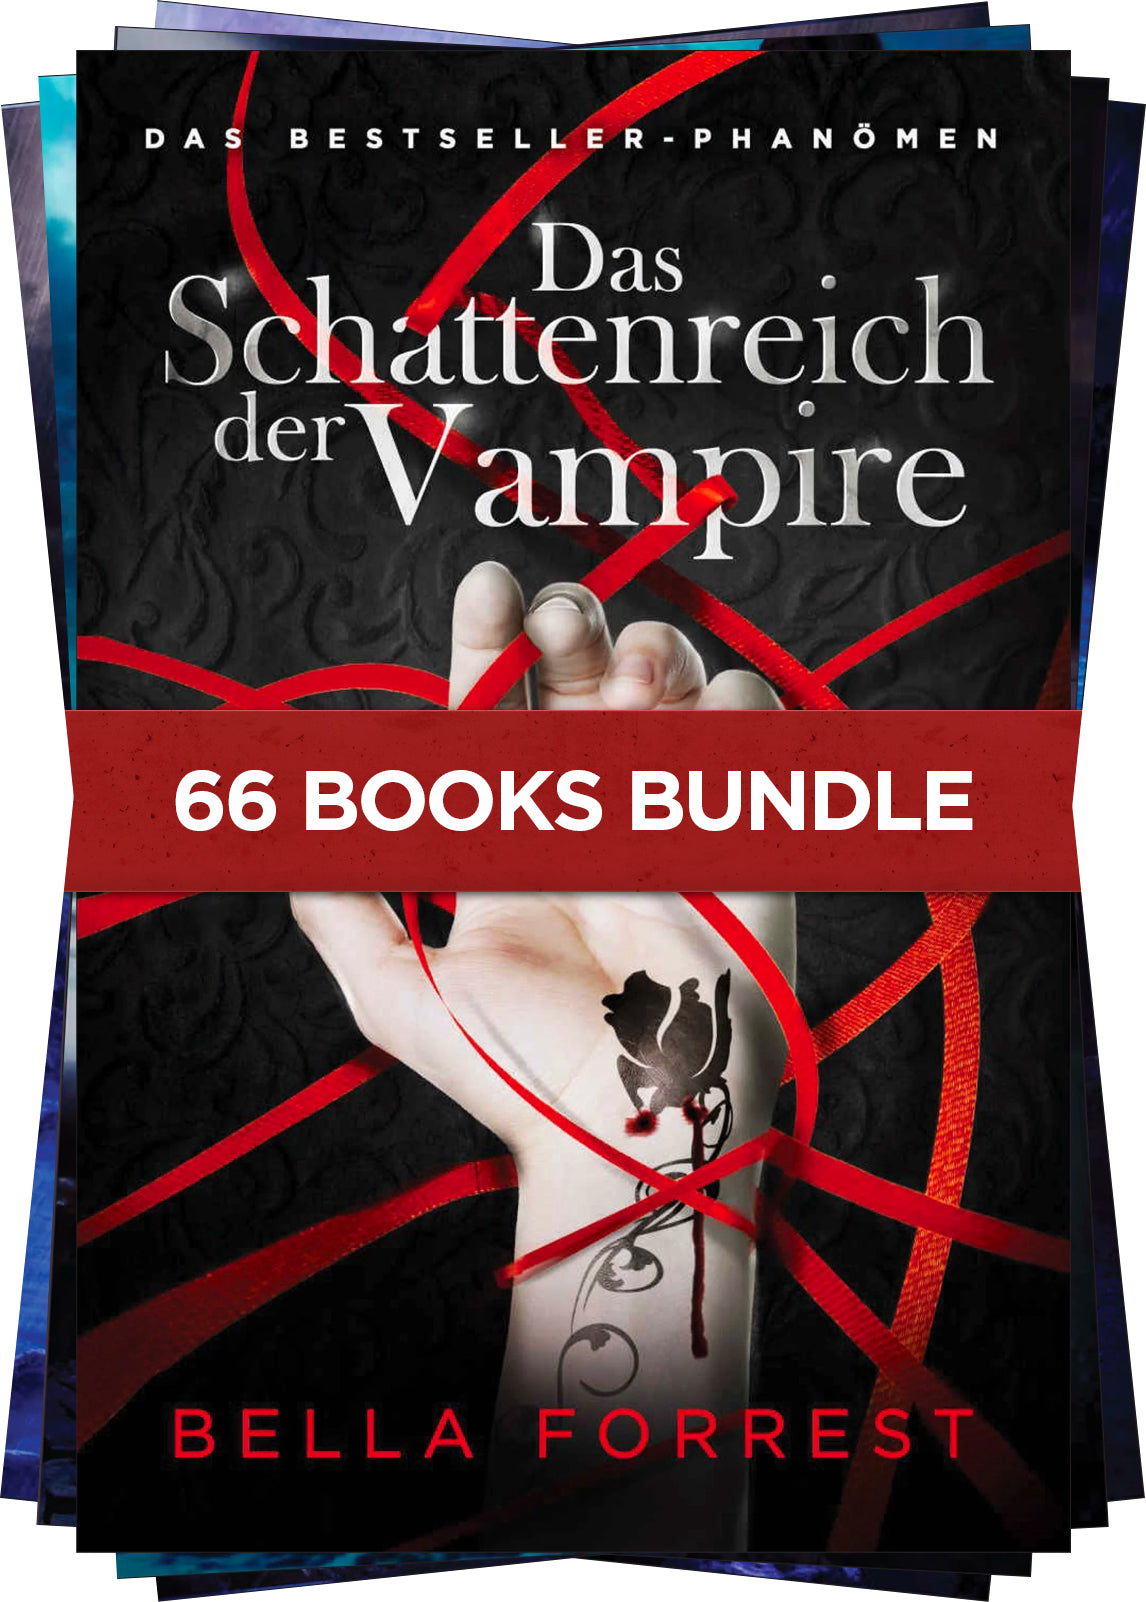 A Shade of Vampire Bundle (91 e-books)